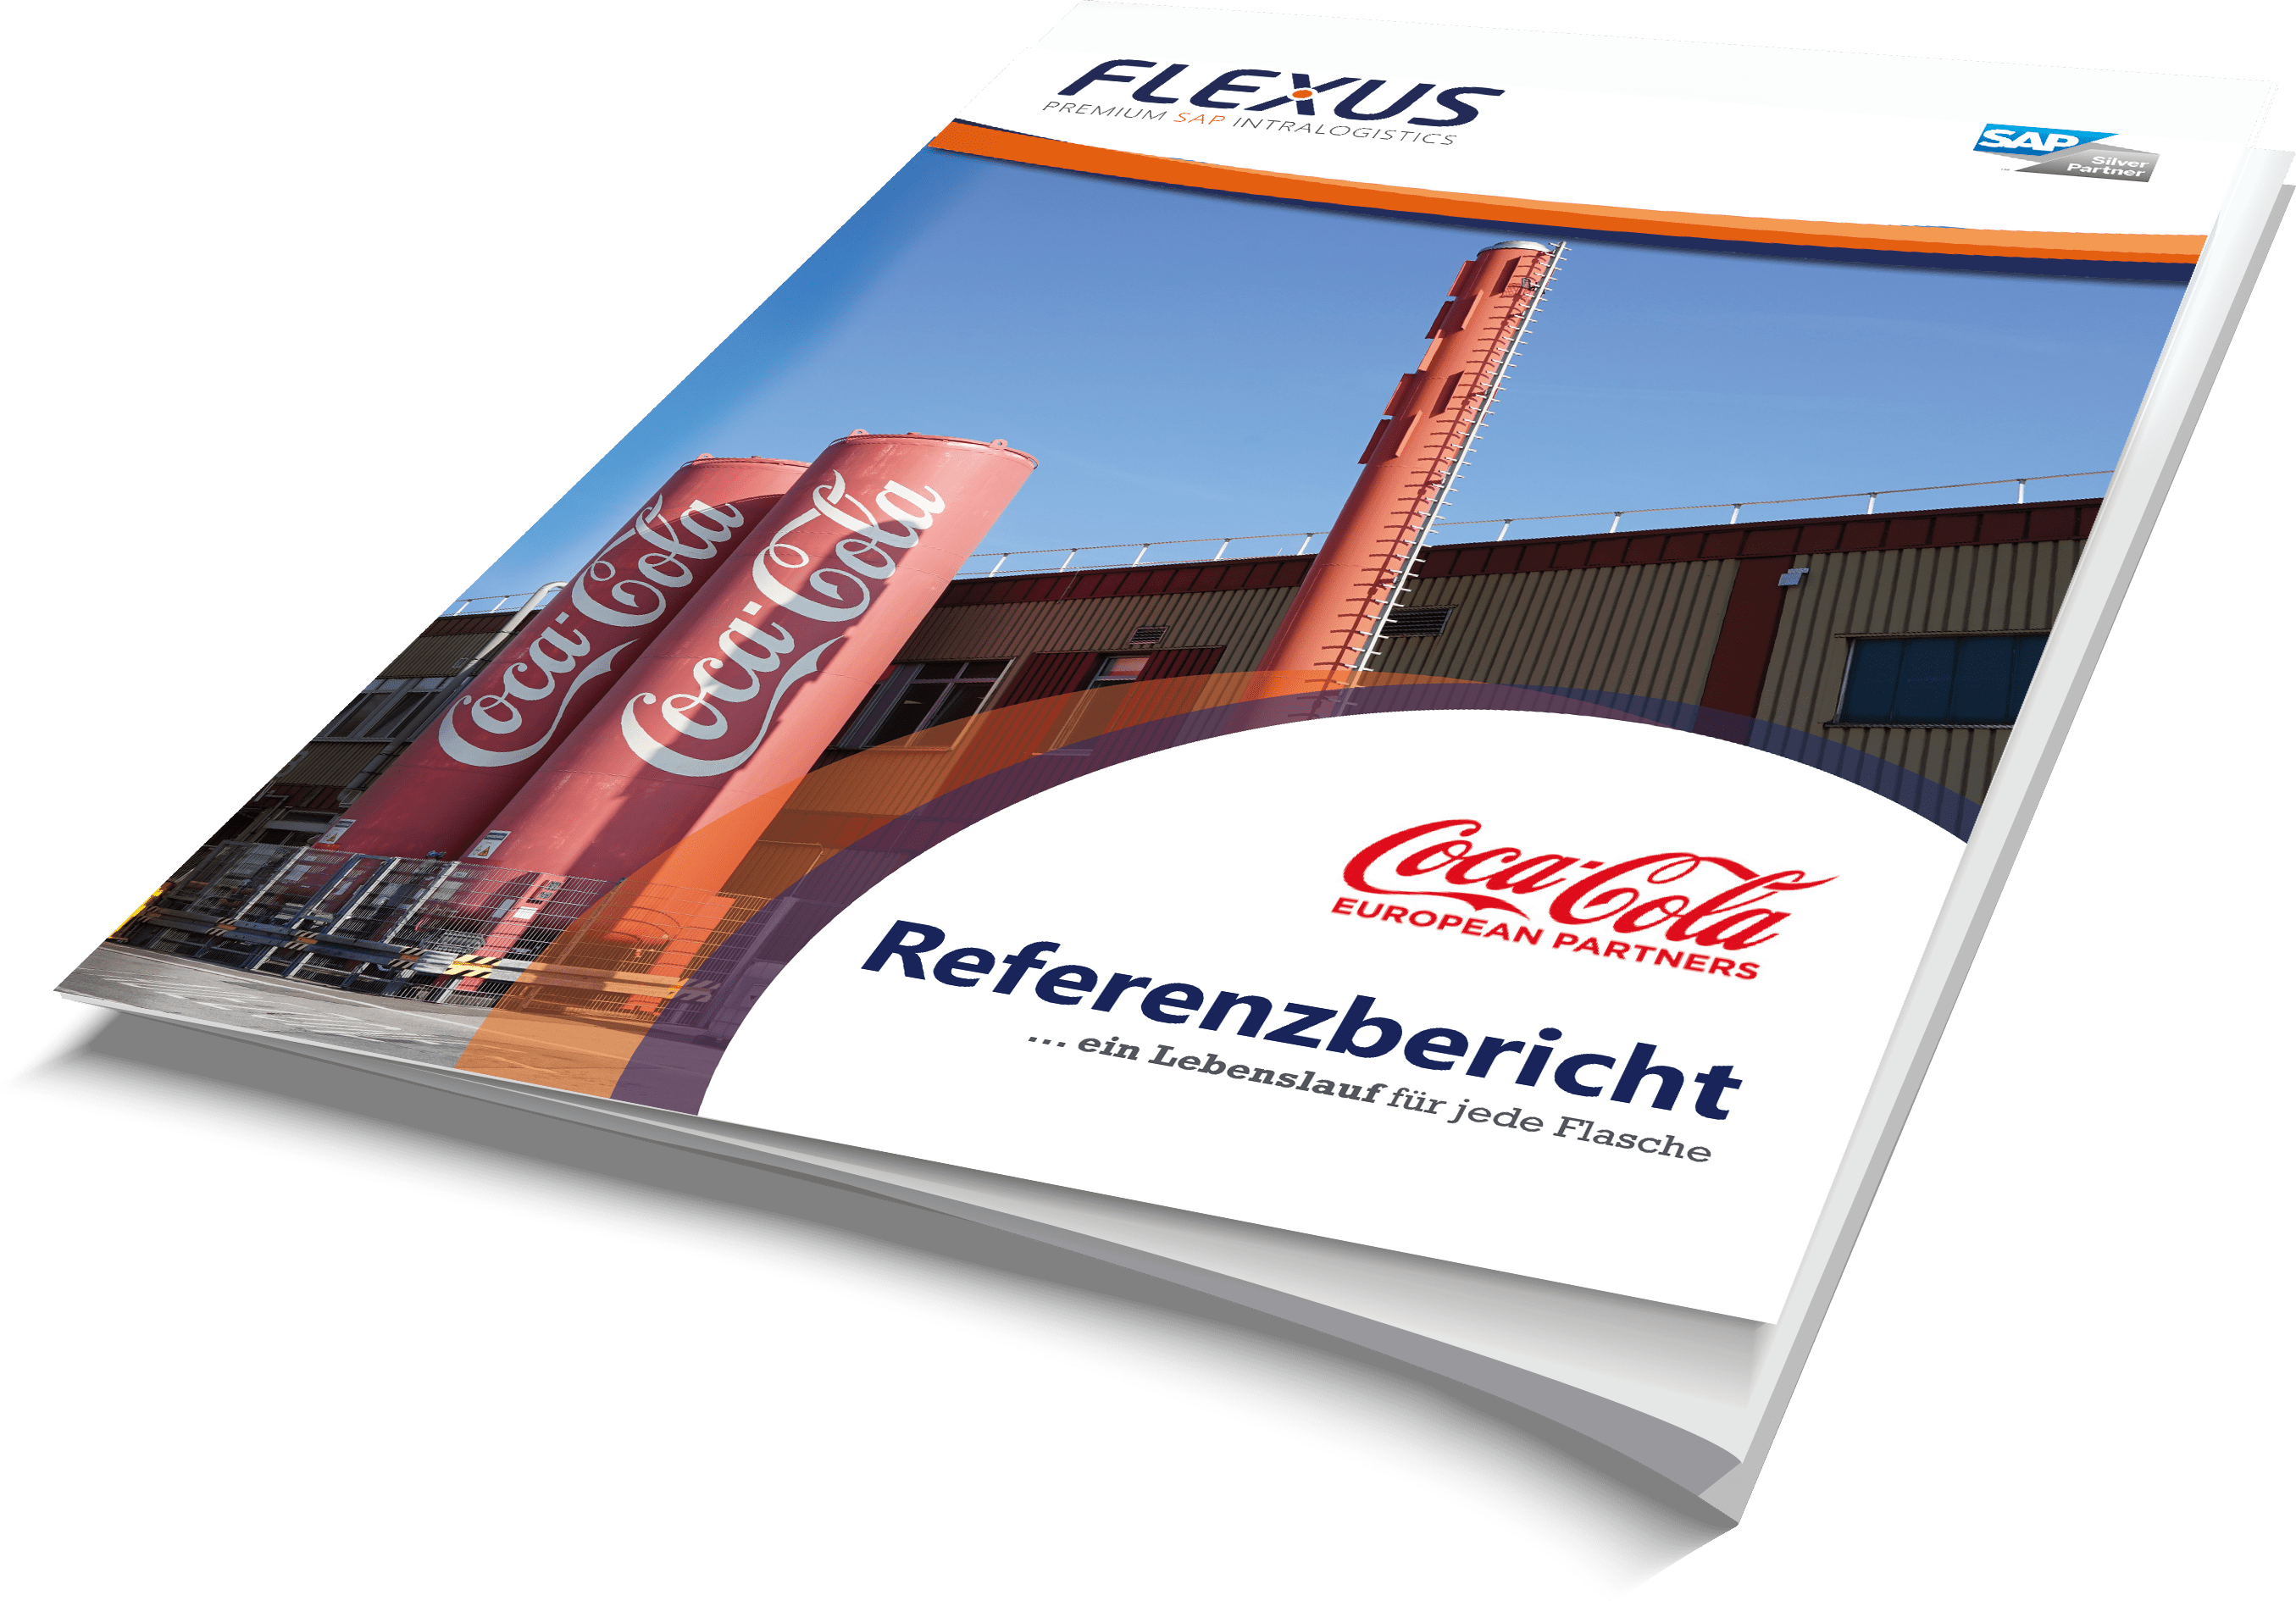 Referenzbericht Coca-Cola